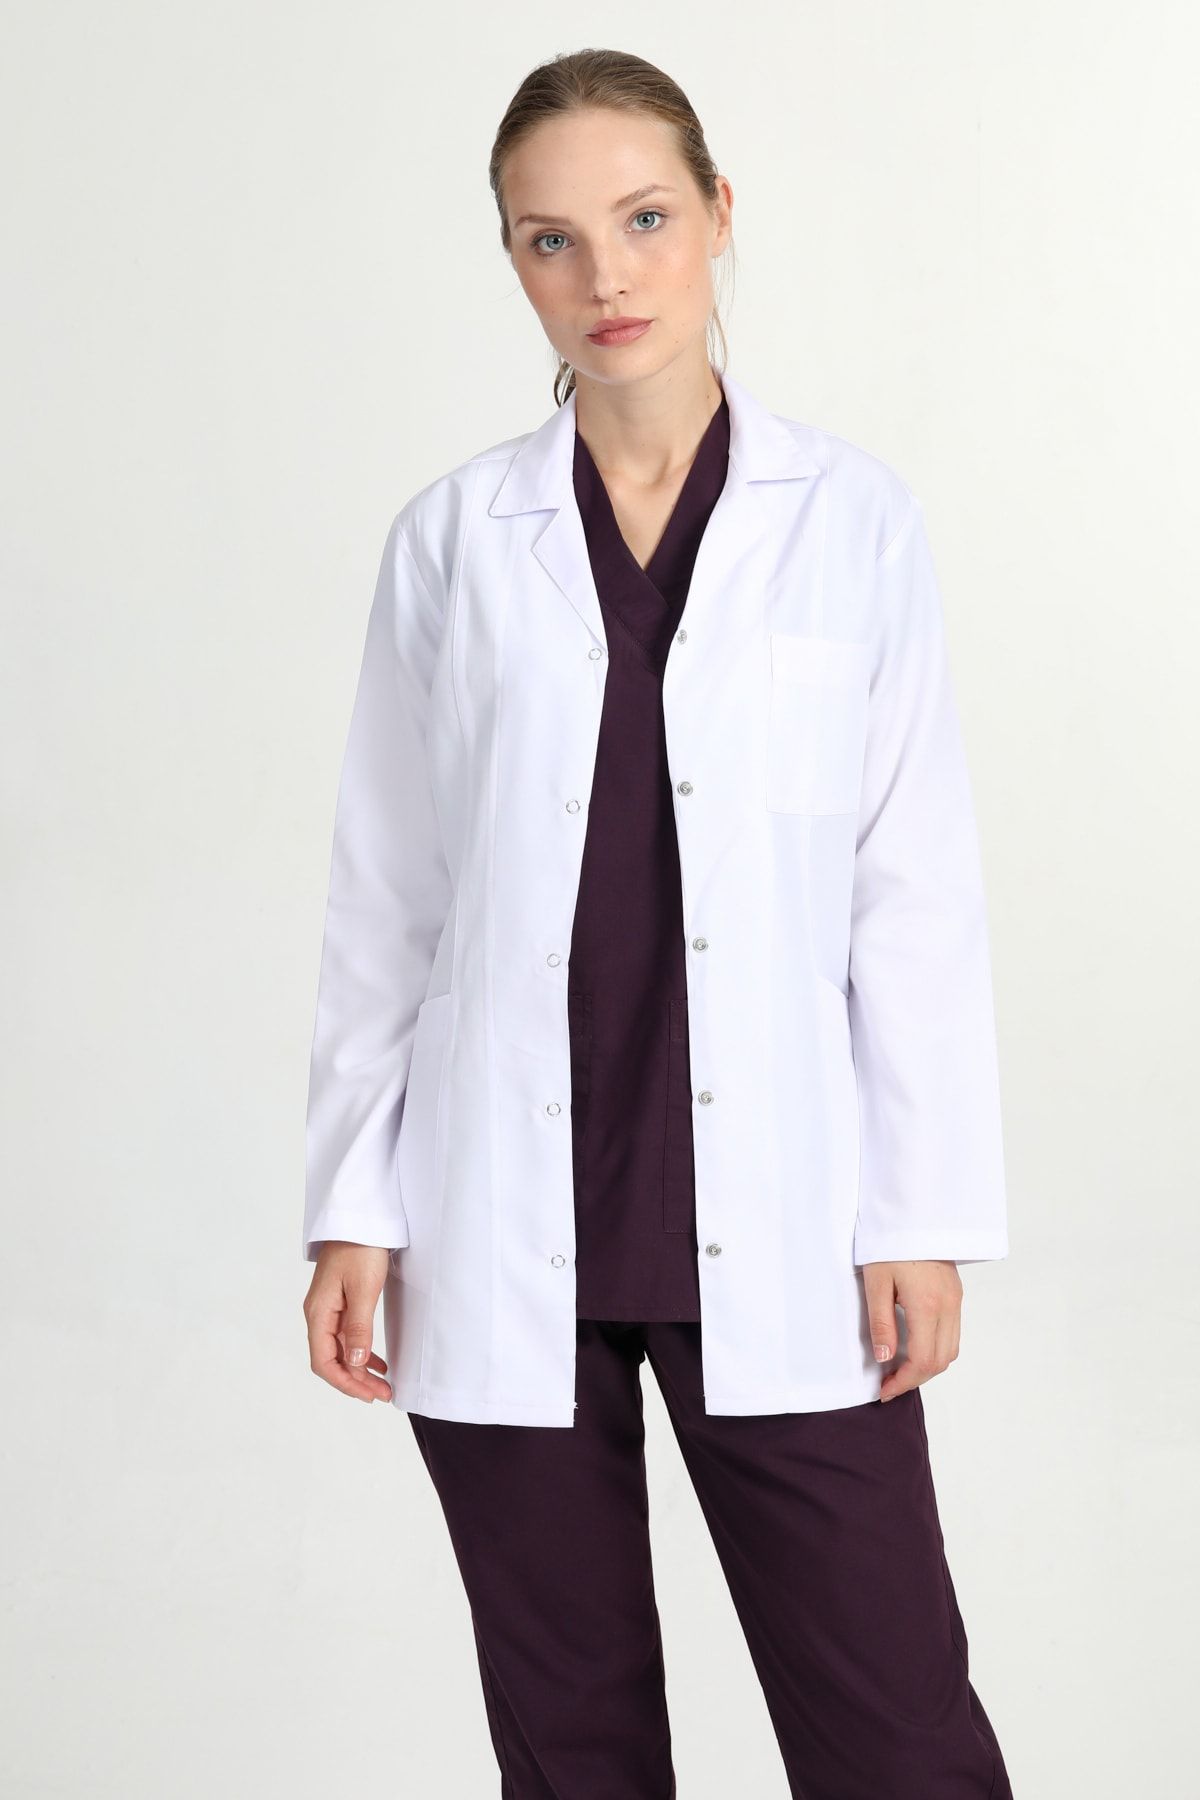 BAŞAK Kadın Beyaz Ceket Boy Gömlek Yaka Doktor Hemşire Öğretmen Önlük